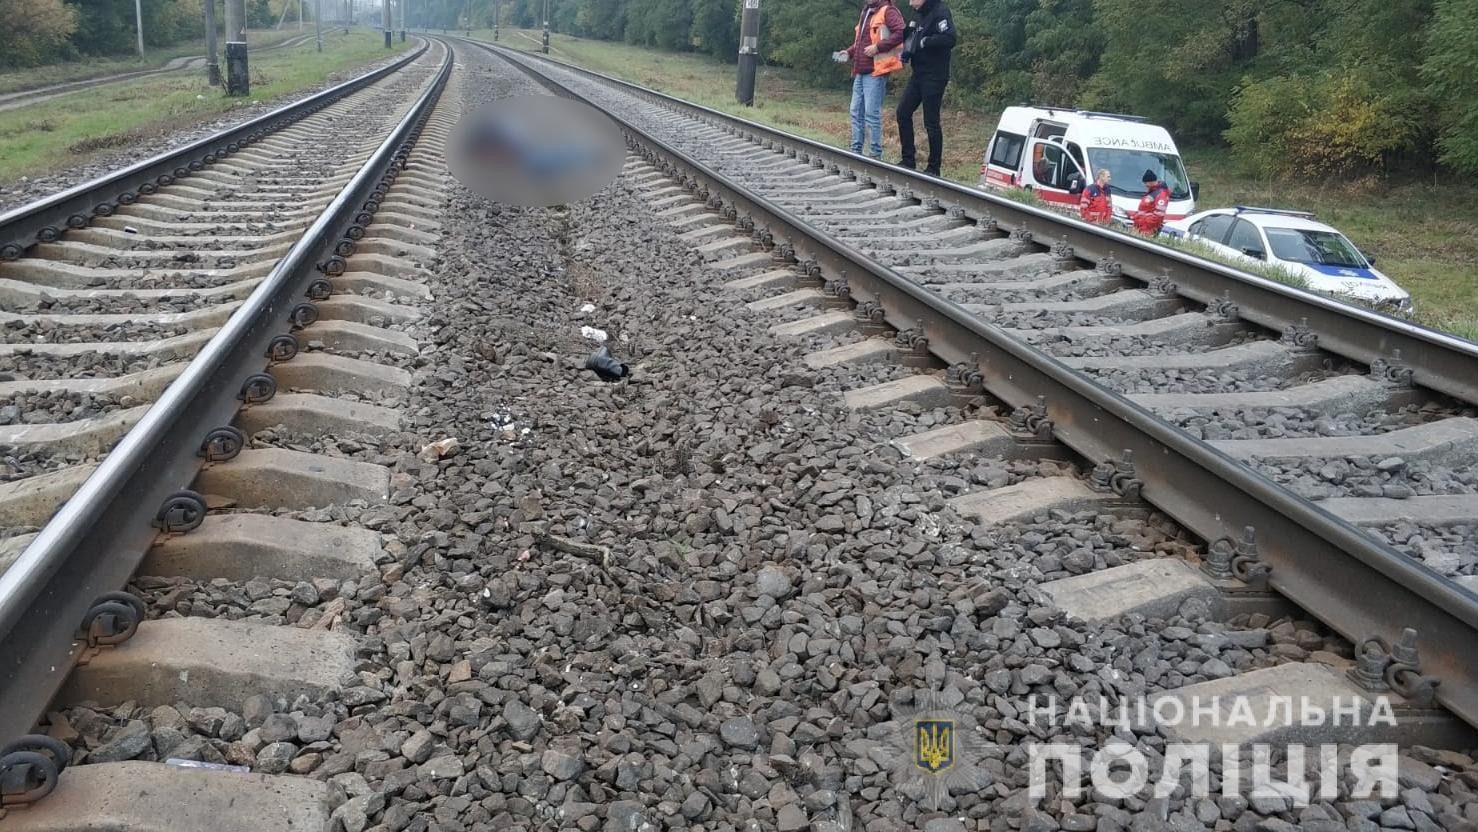 Под Киевом женщину переехал поезд. Пострадавшая скончалась на месте происшествия